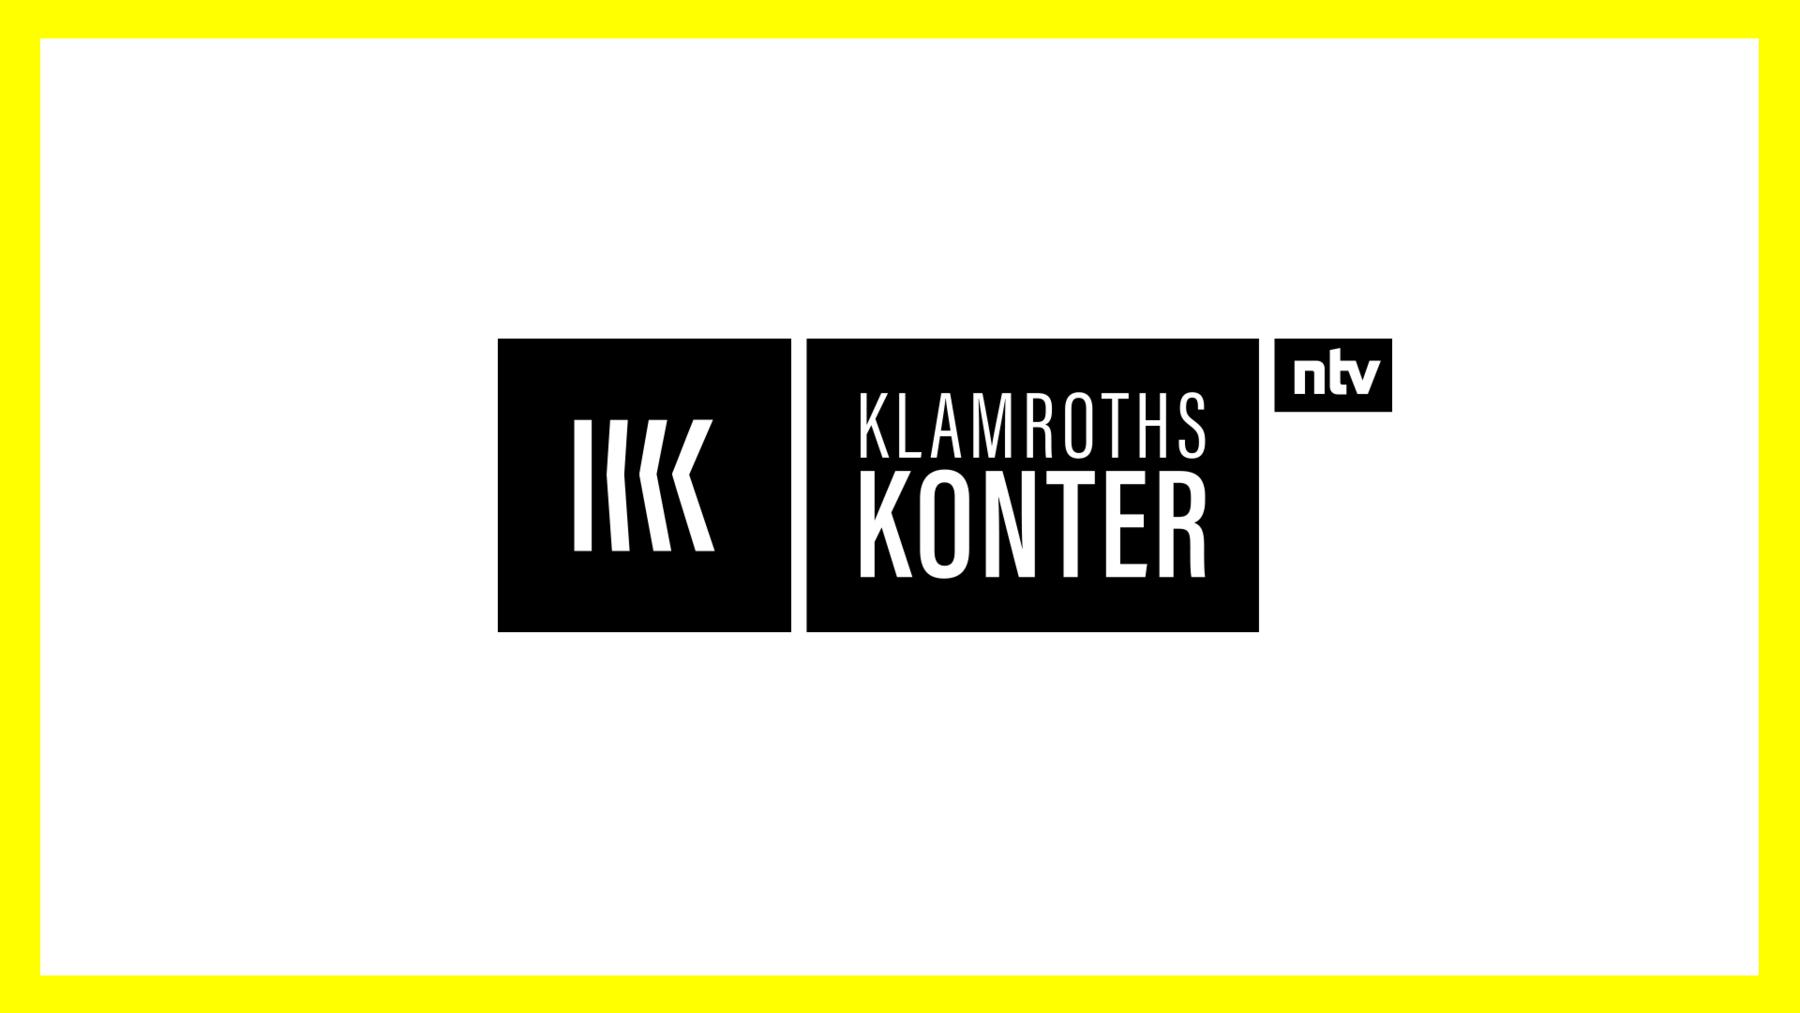 Klamroths Konter